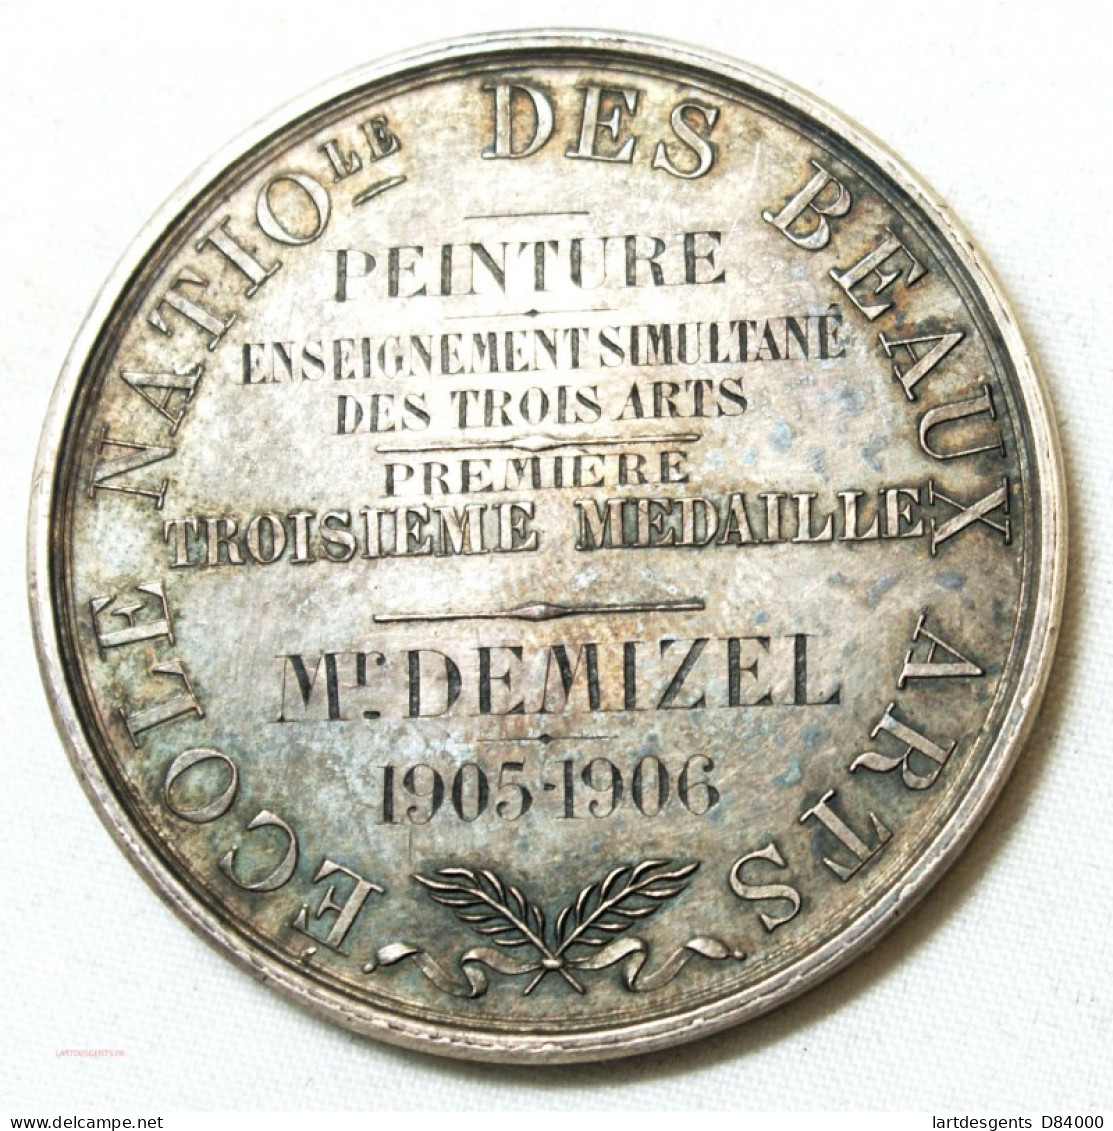 MEDAILLE Ecole Des Beaux Arts Décernée à M. DEMIZEL 1905-06 Par E. GATTEAUX. F. - Professionals / Firms